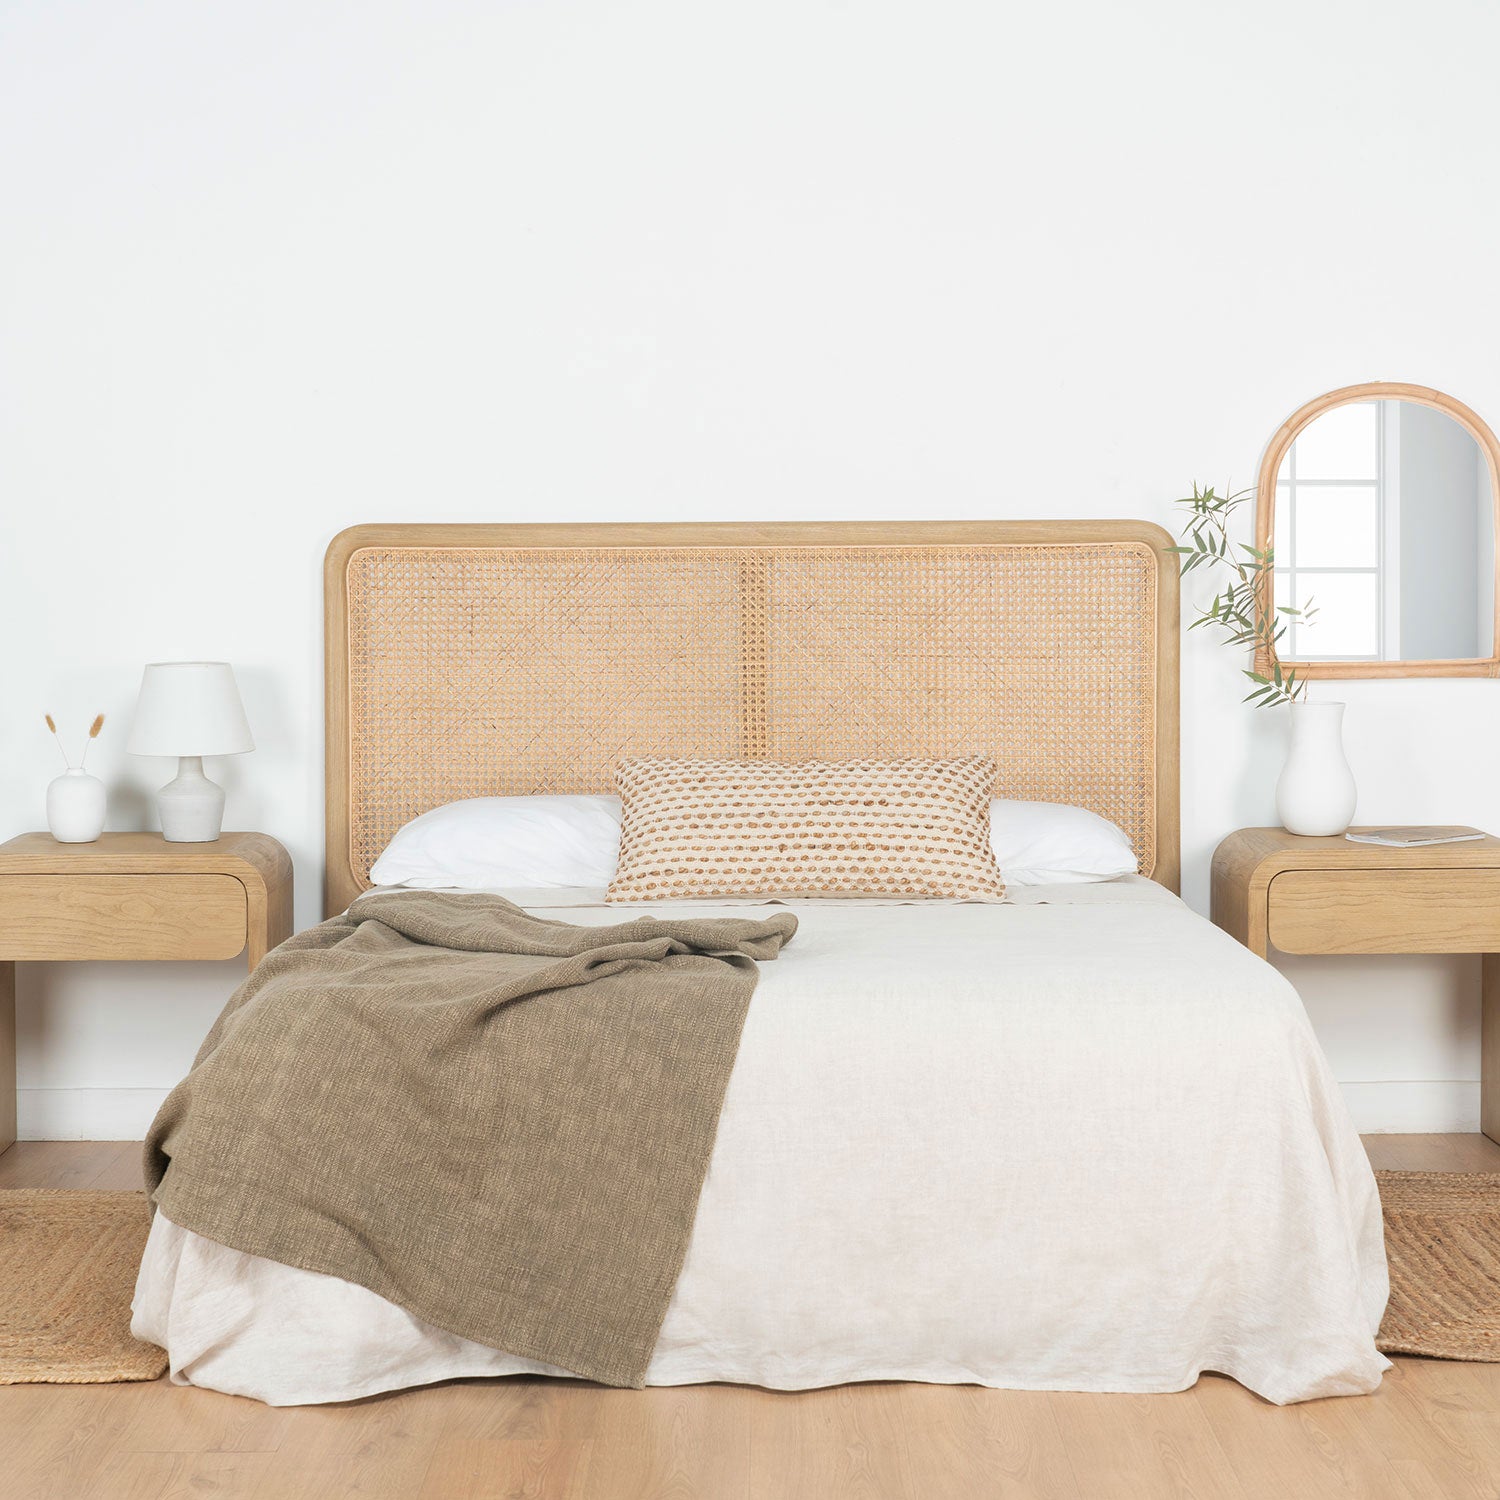 Cabecero cama 150 diseño étnico vintage madera y ratán color natural (3)